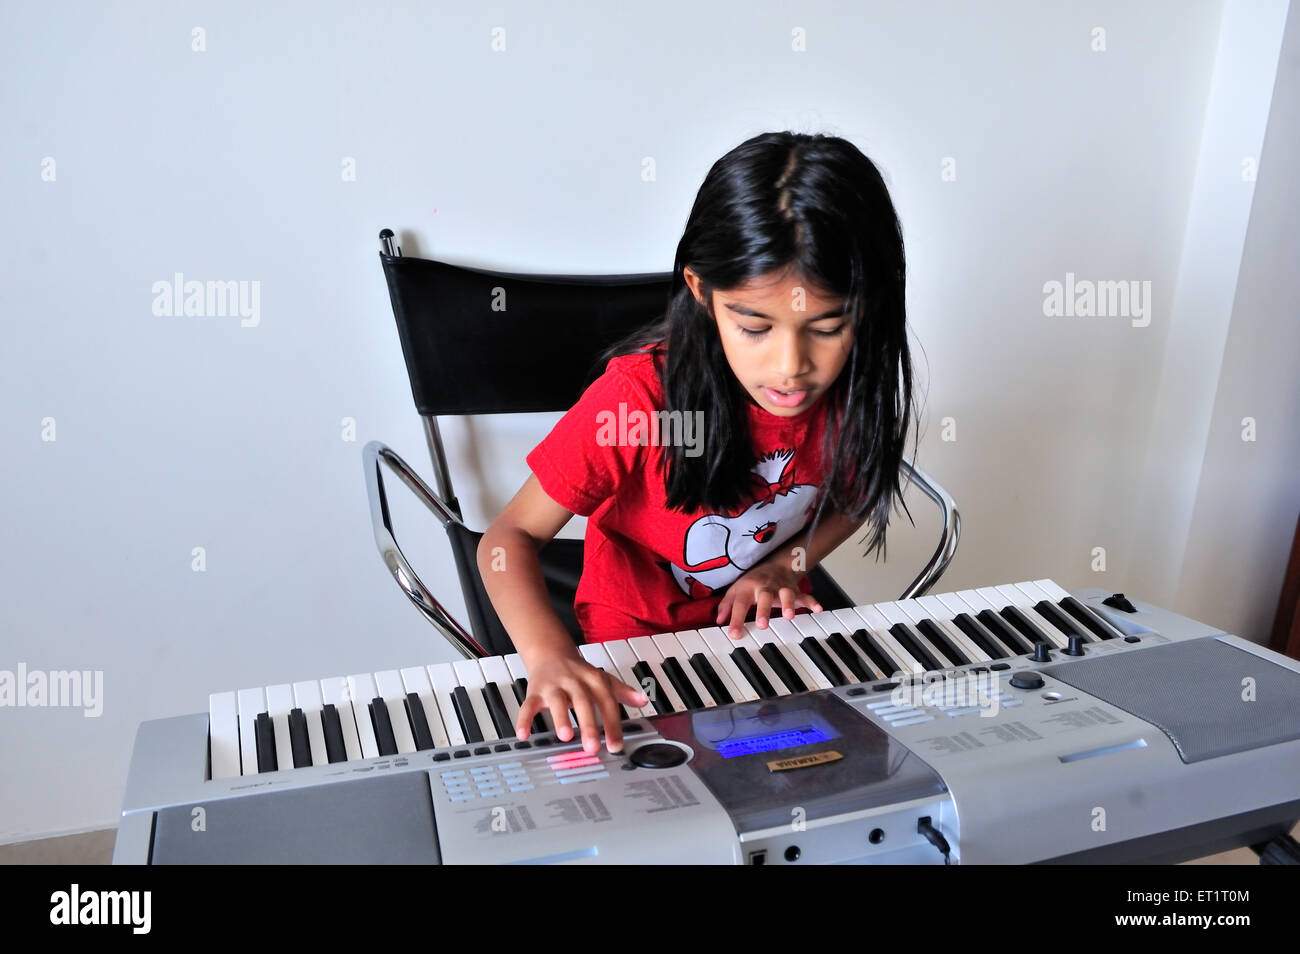 Maharashtrian girl playing synthesizer MR#556 Stock Photo